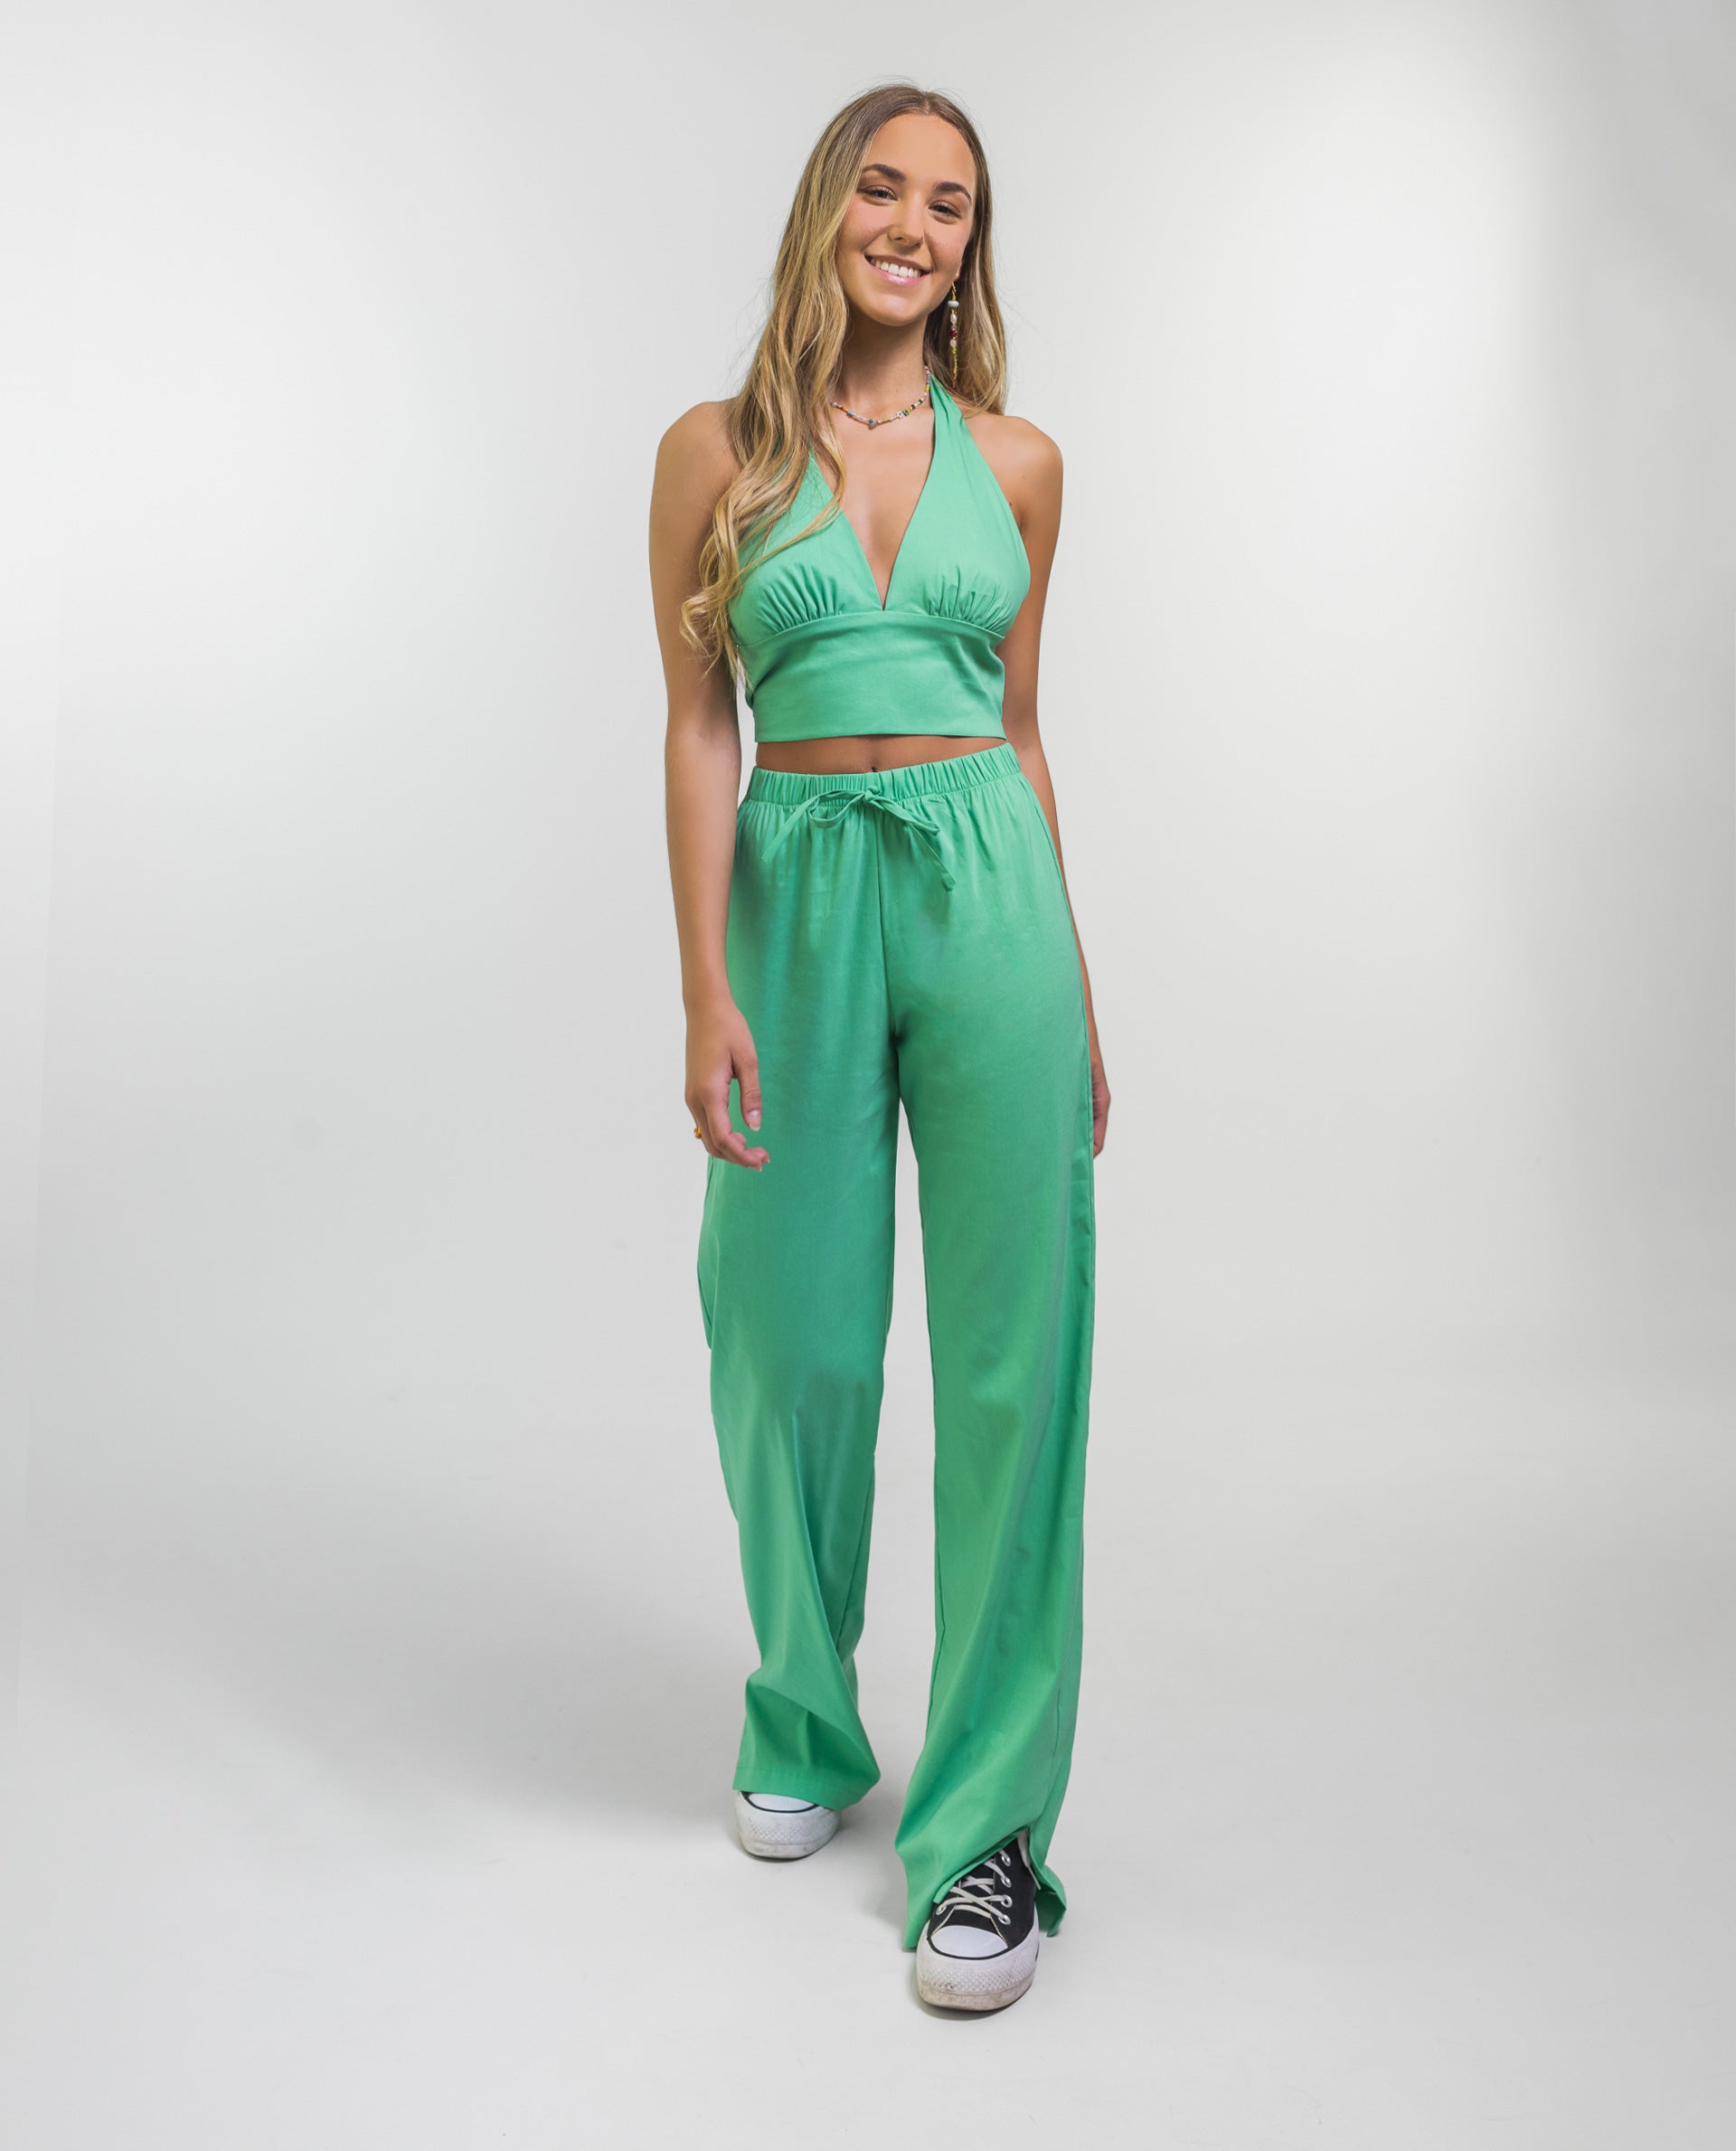 PANTALÓN PALM BEACH | Pantalón Fluido Verde de Mujer con Aberturas | THE-ARE